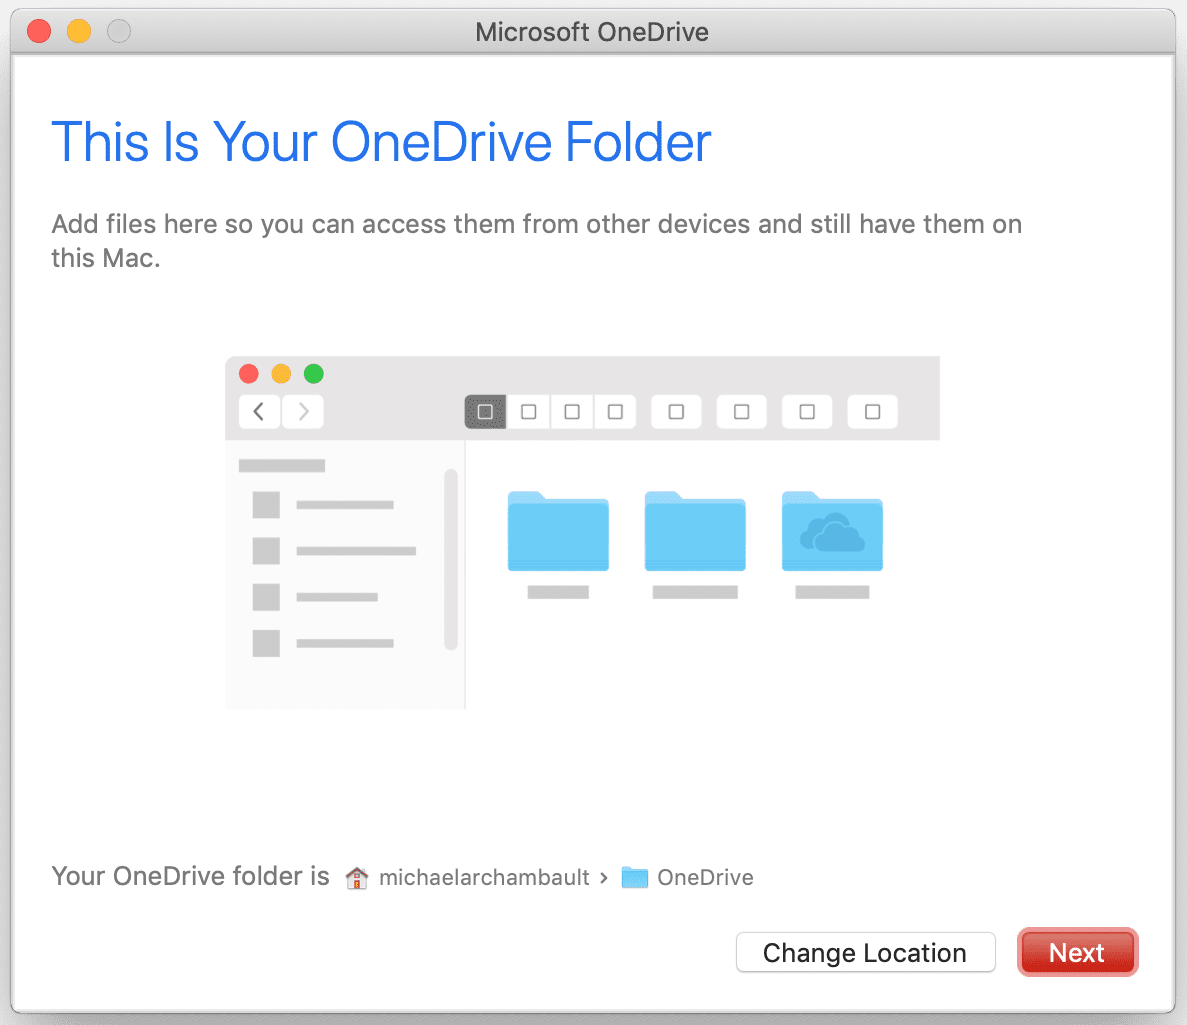 Schermafbeelding van OneDrive-installatie op een Mac-computer.